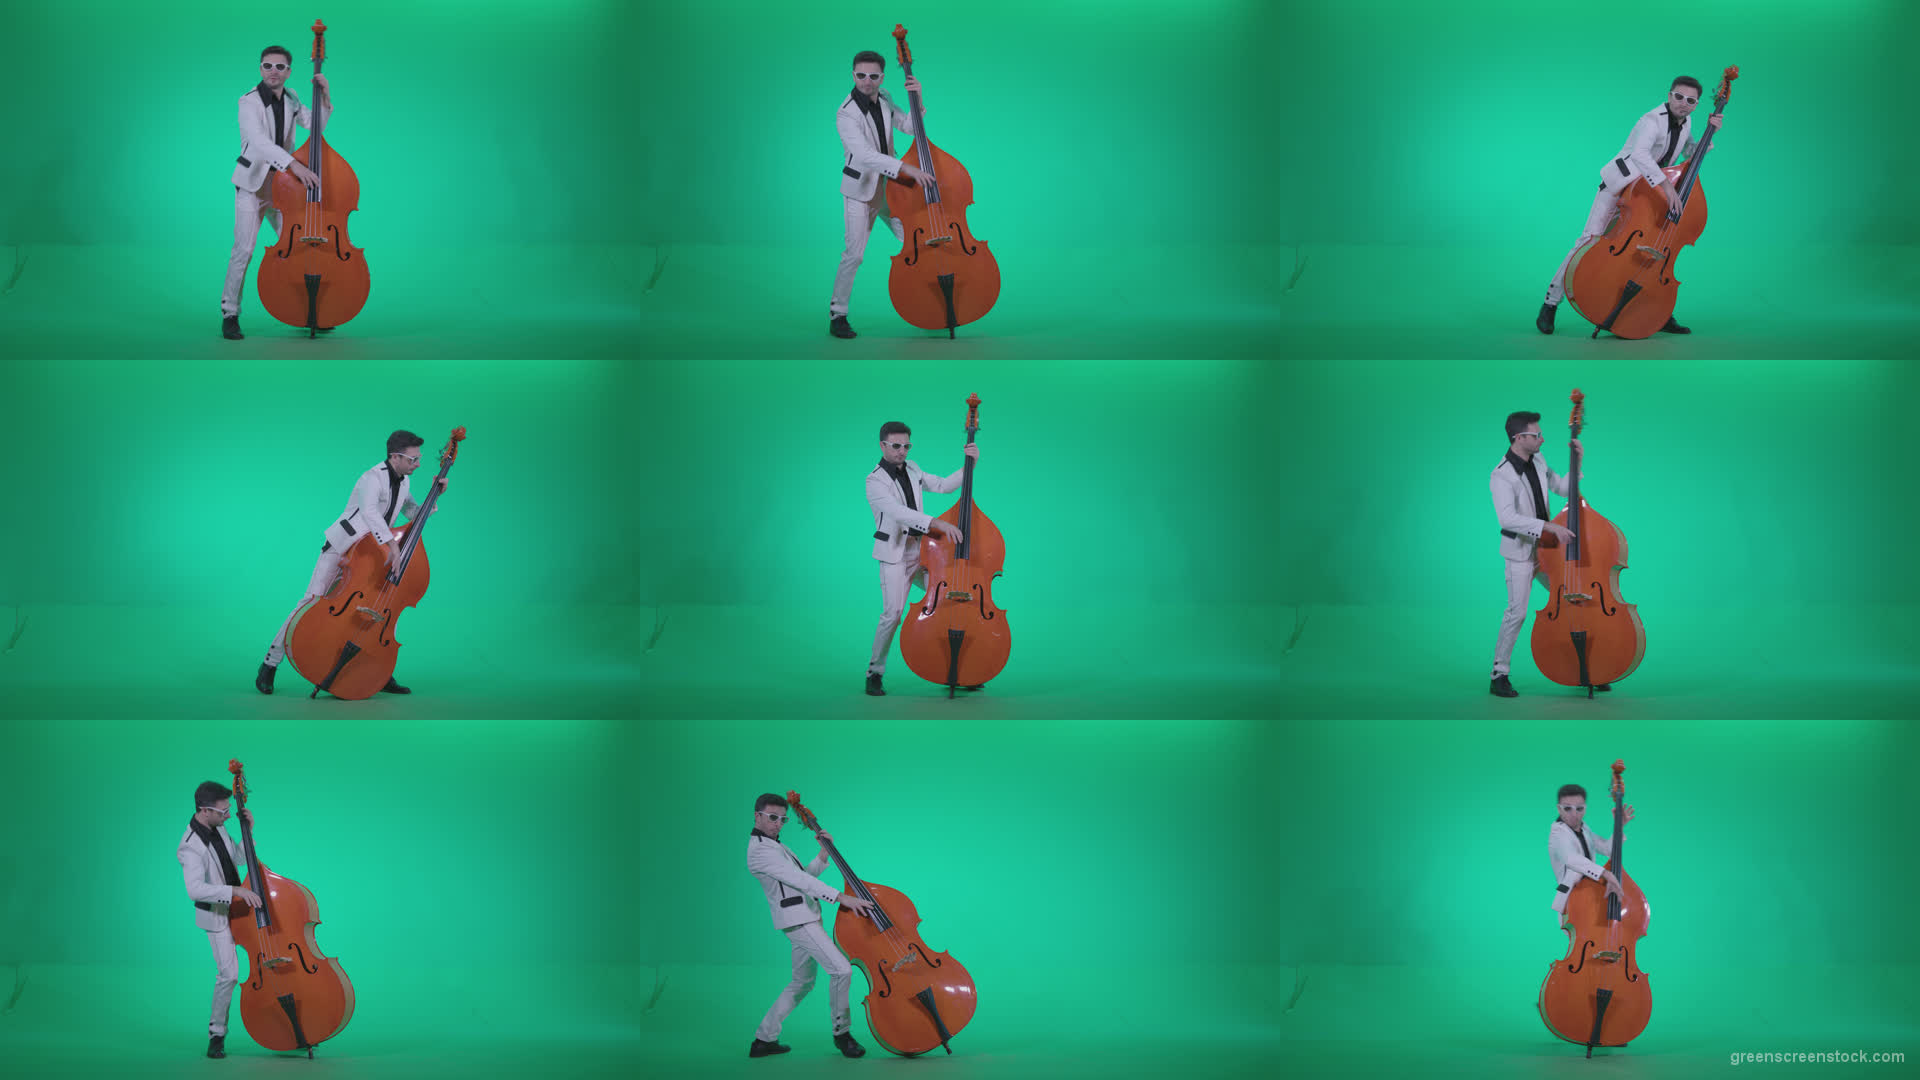 Contrabass-Jazz-Performer-j11-Green-Screen-Video-Footage Green Screen Stock